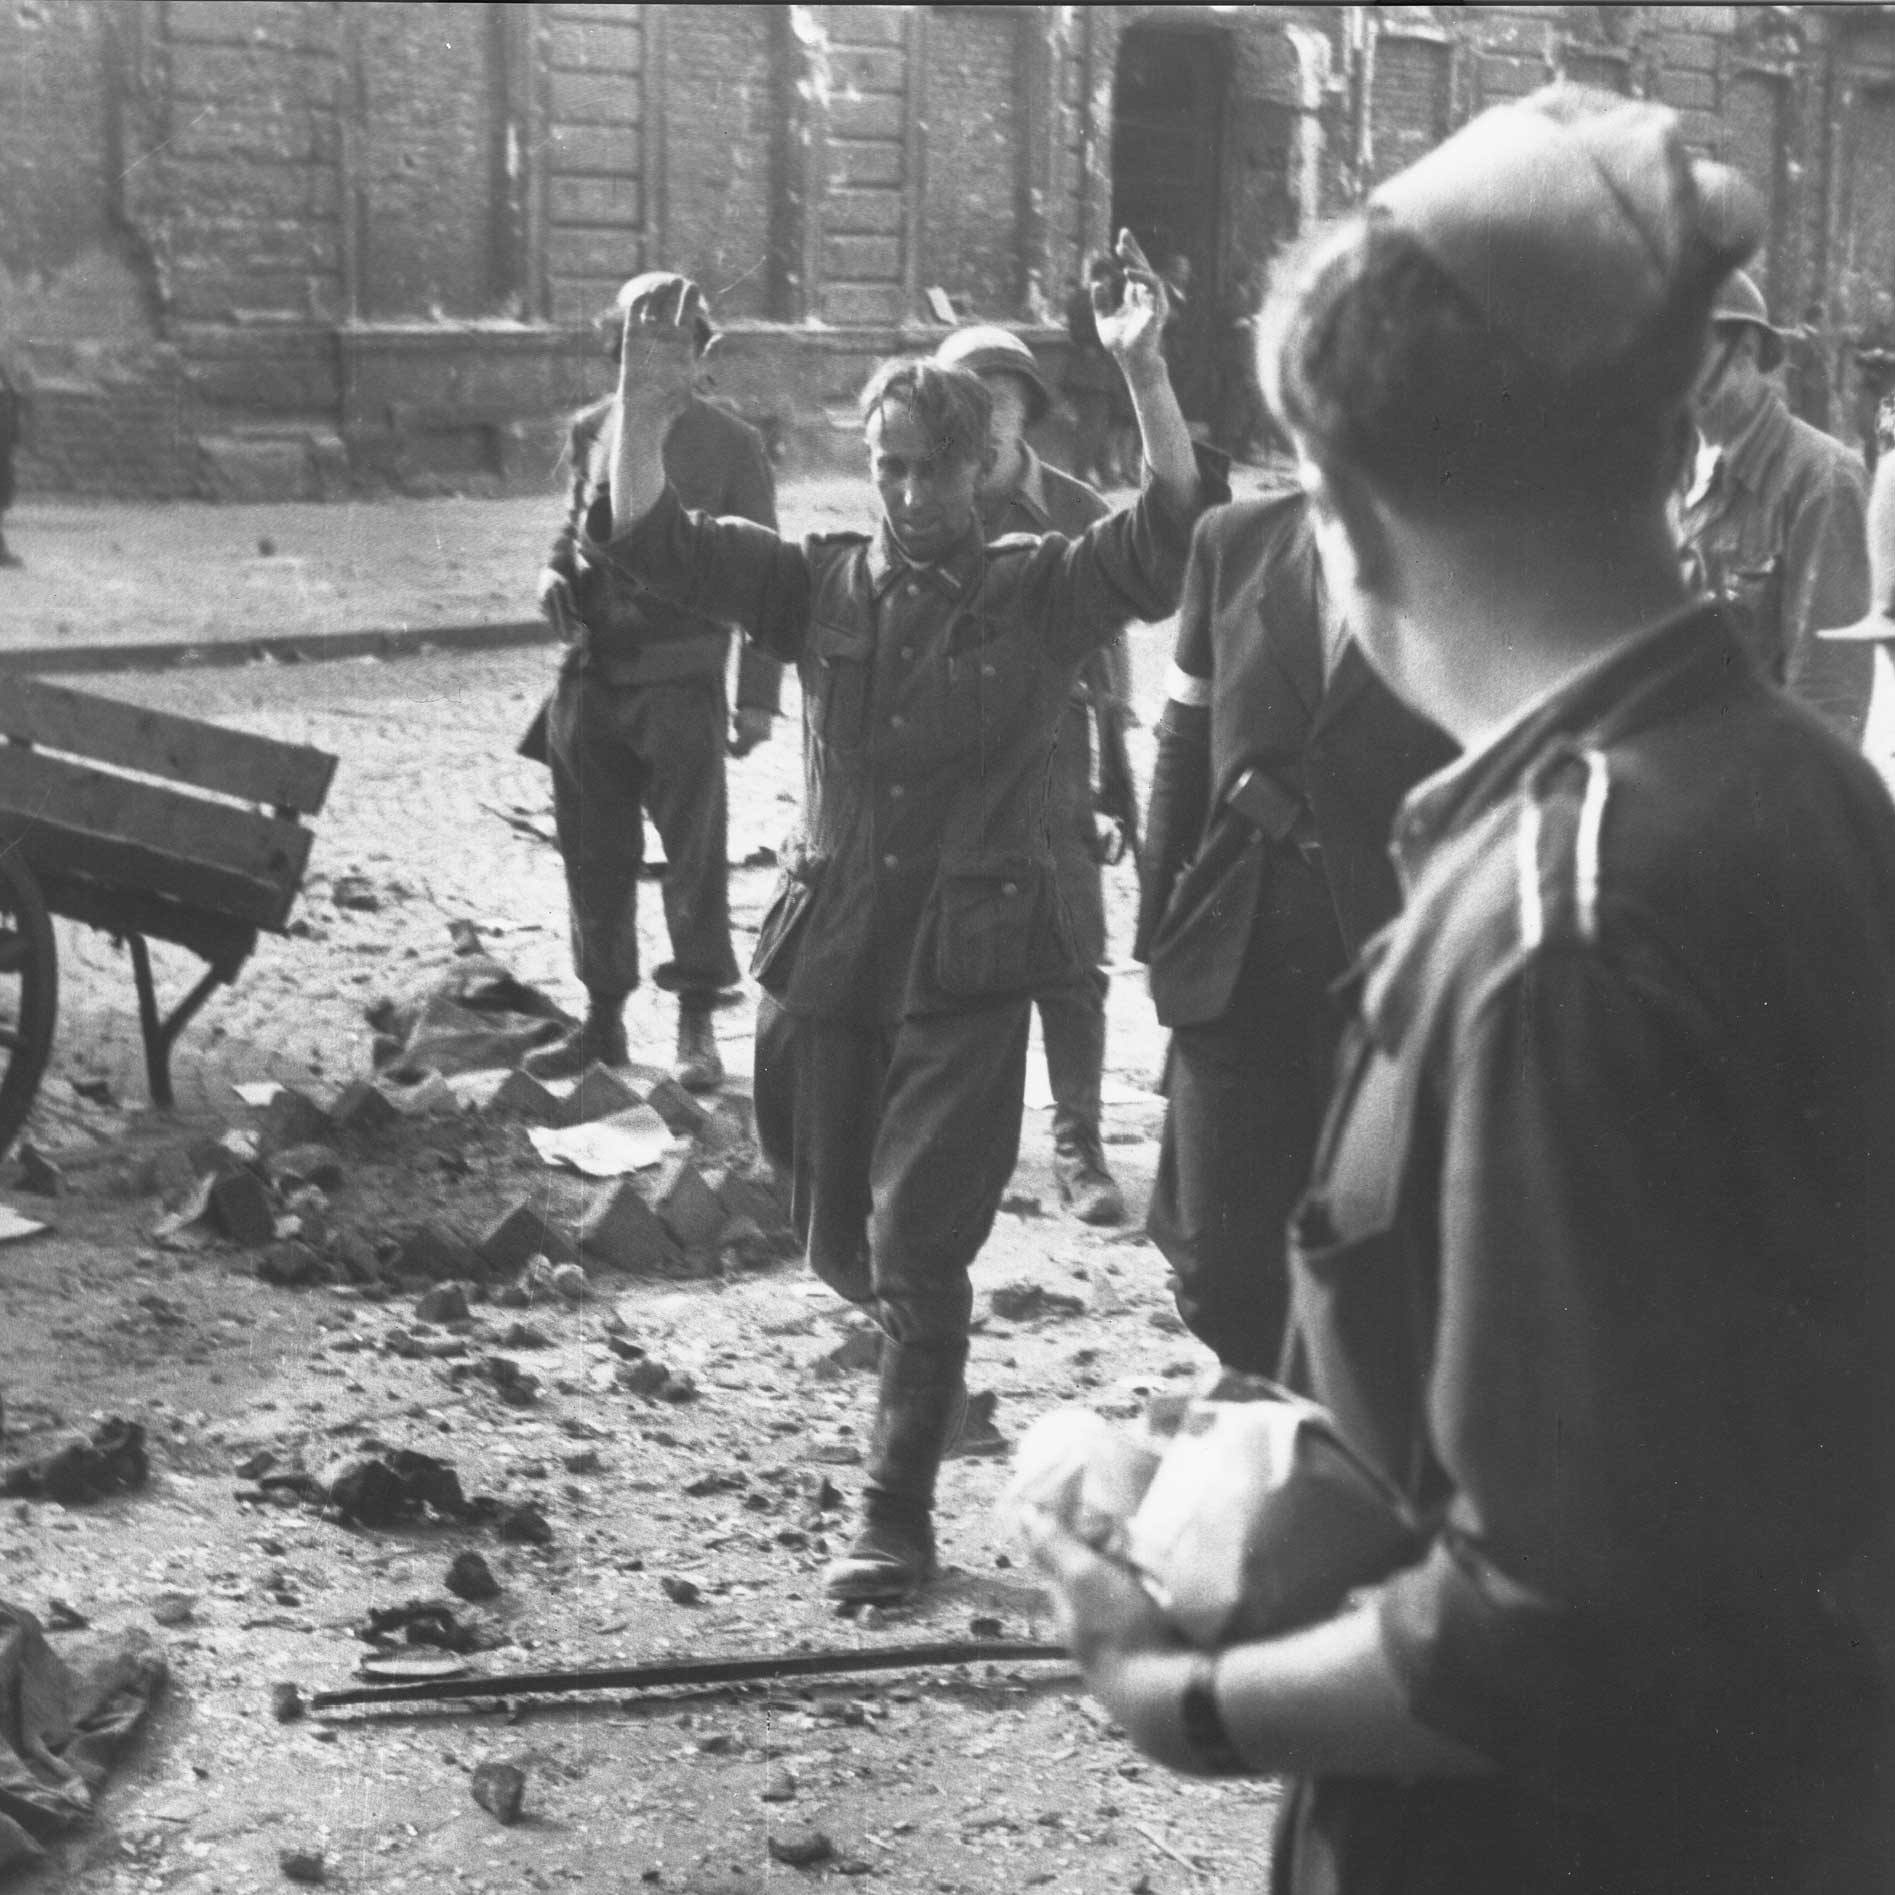 Niemiecki żołnierz wzięty do niewoli przez powstańców 20 sierpnia 1944 roku.